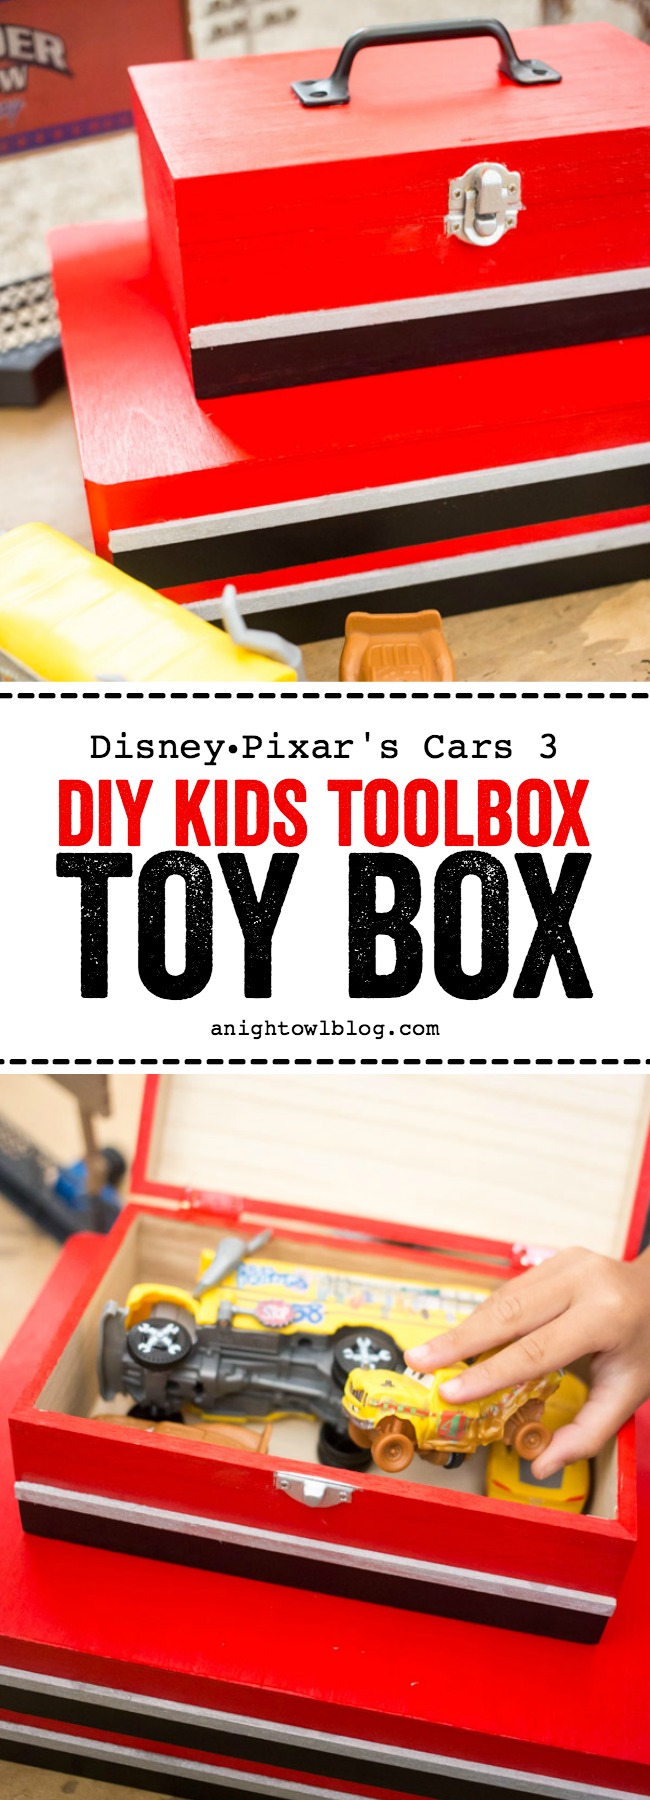 DIY Kids Tool Box